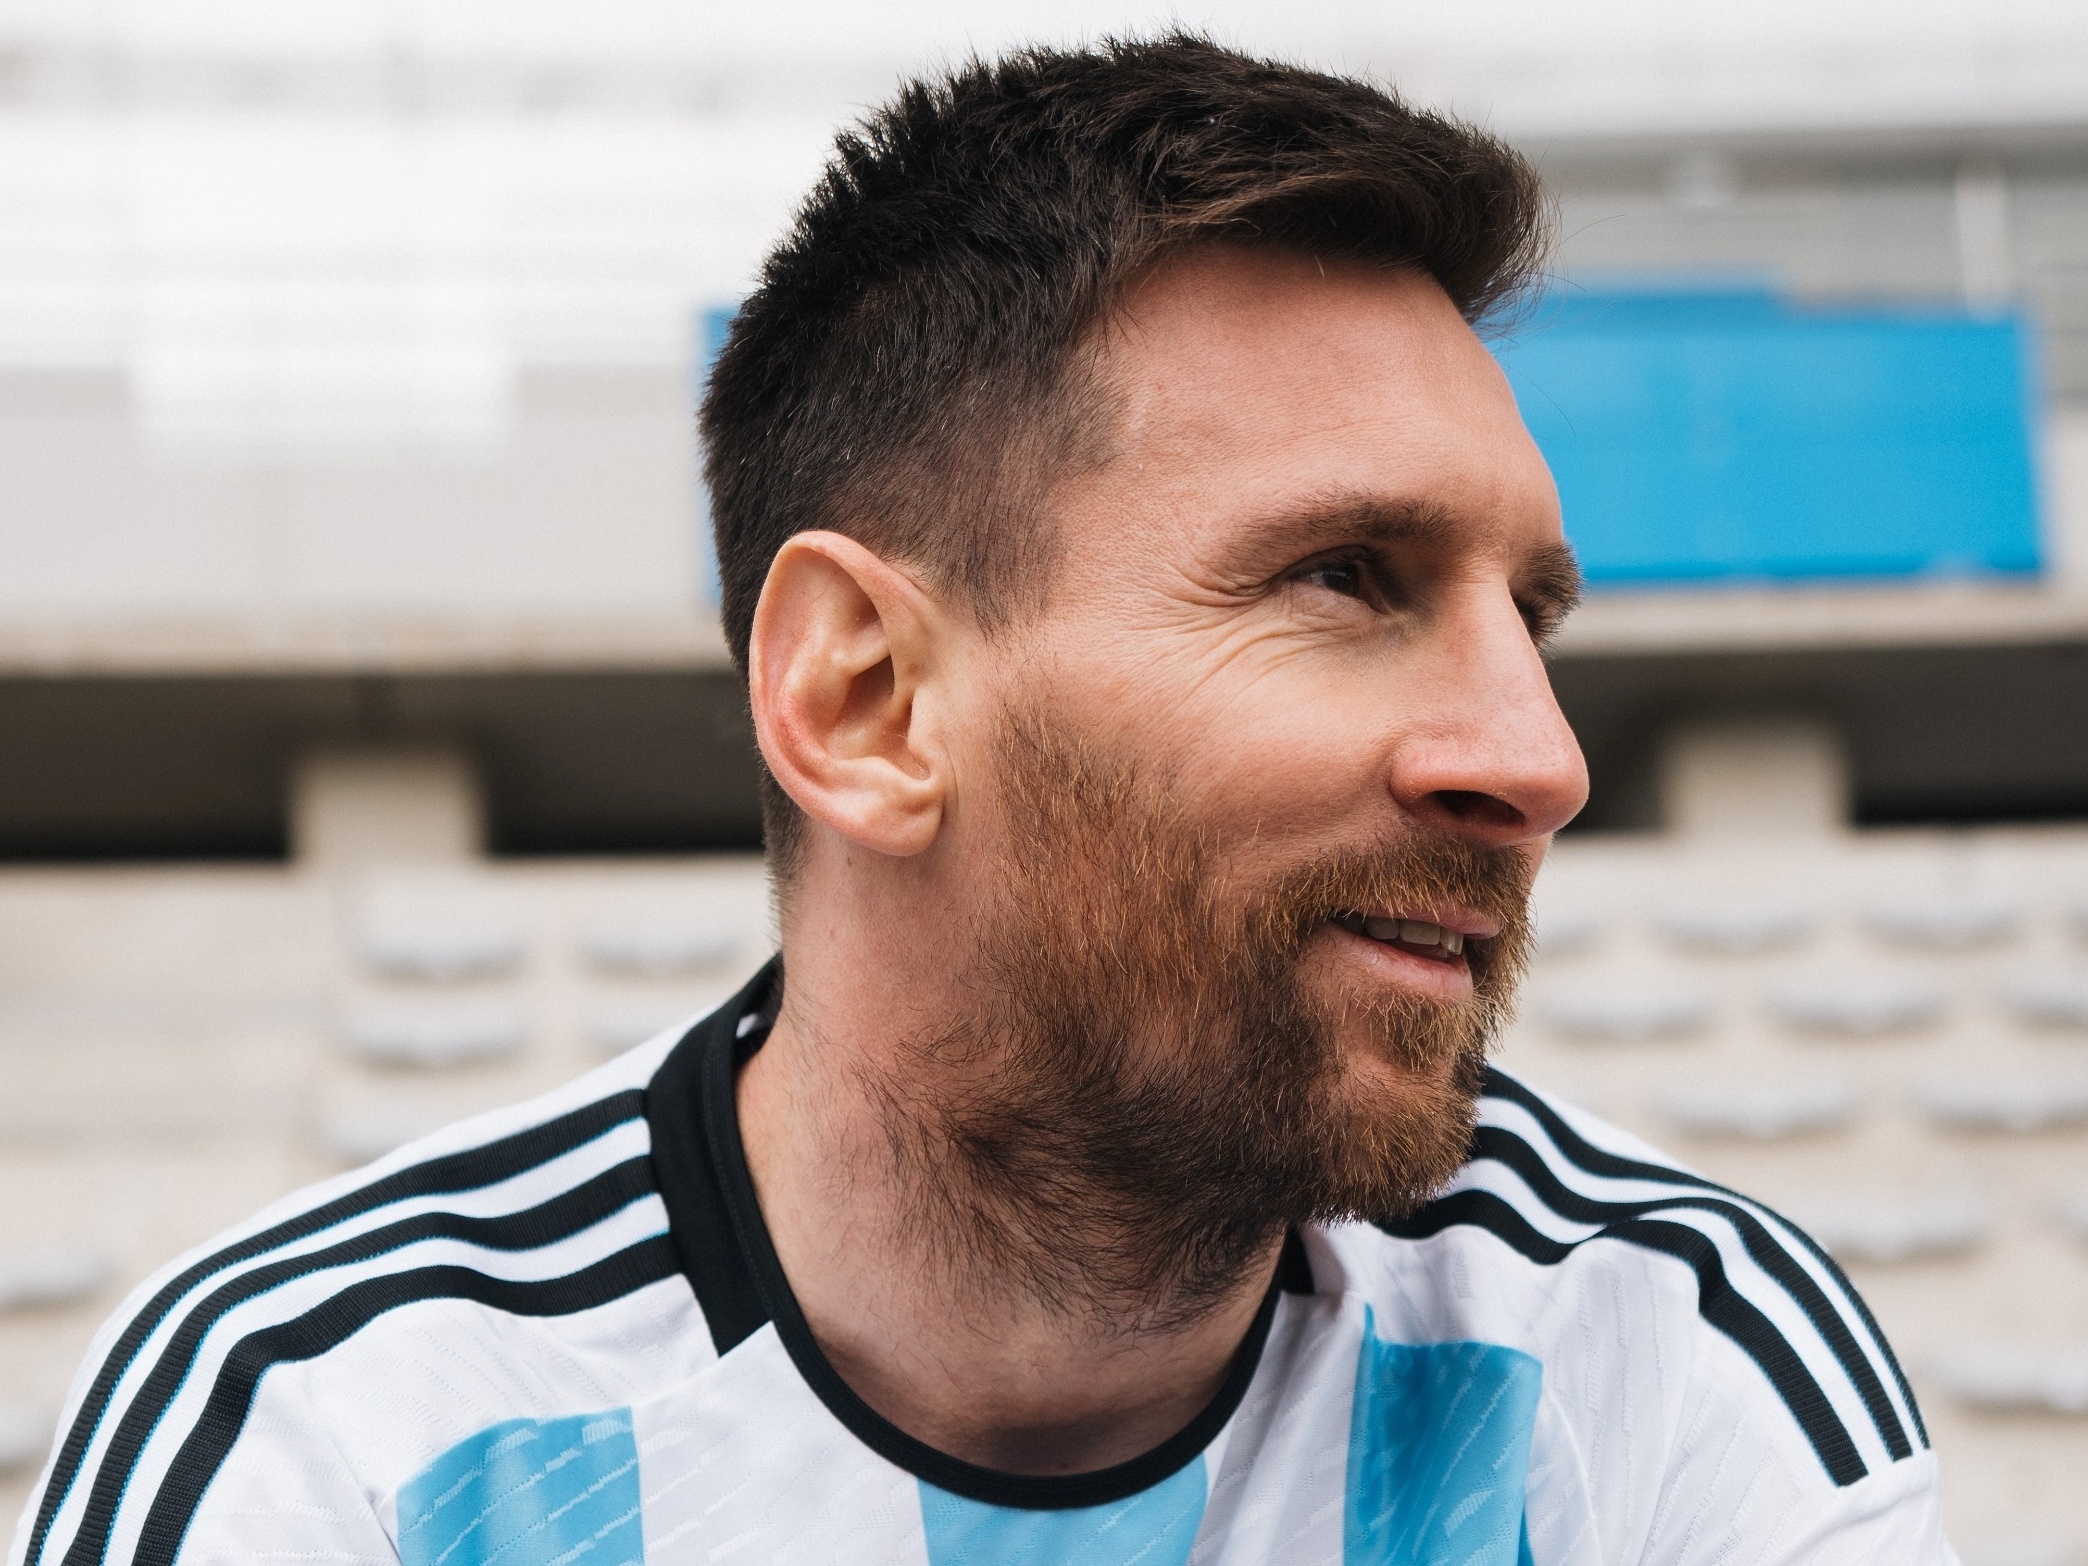 Camisa da Argentina para a Copa do Mundo 2022 tem imagens vazadas » Mantos  do Futebol